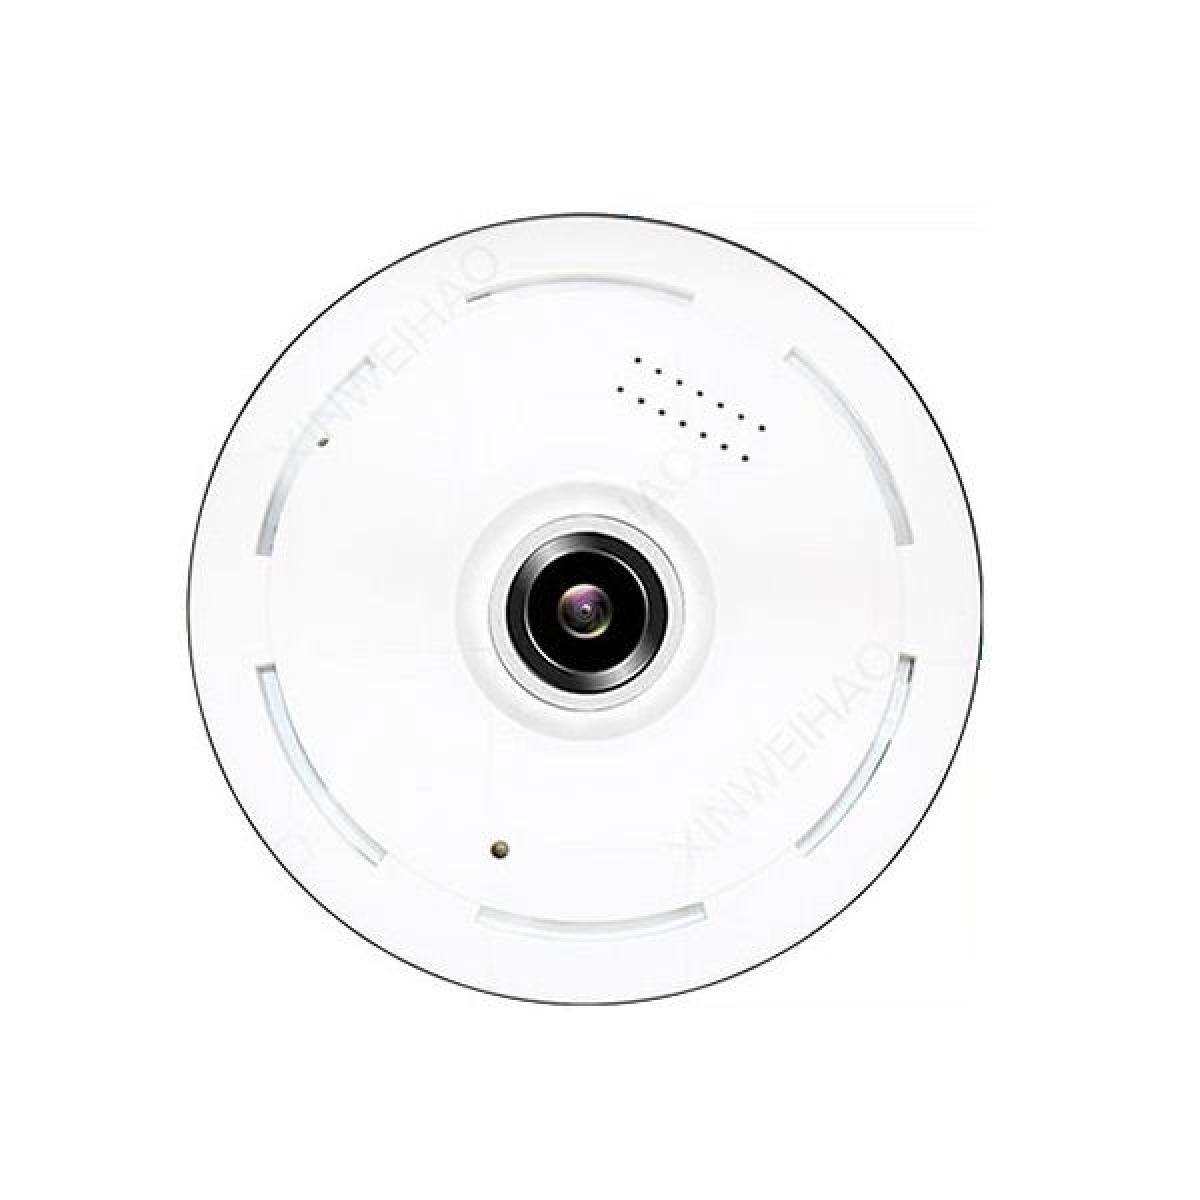 Totalcadeau - Caméra de sécurité vue panoramique Wifi IP vision nocturne - Autres accessoires smartphone